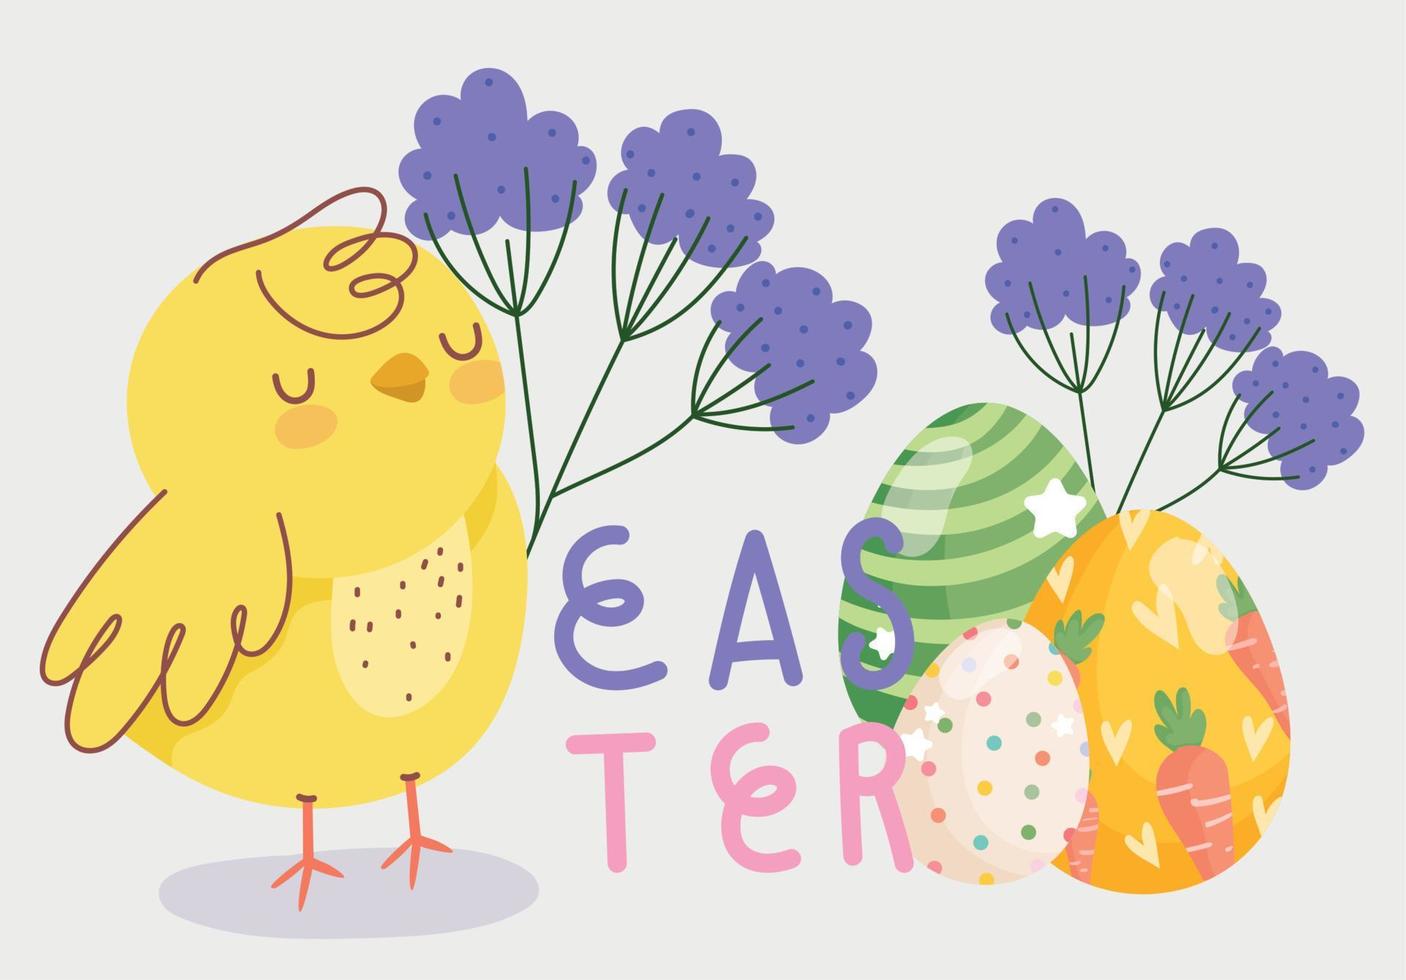 contento Pasqua saluto carta pollo uova Folaige le foglie decorazione carta vettore